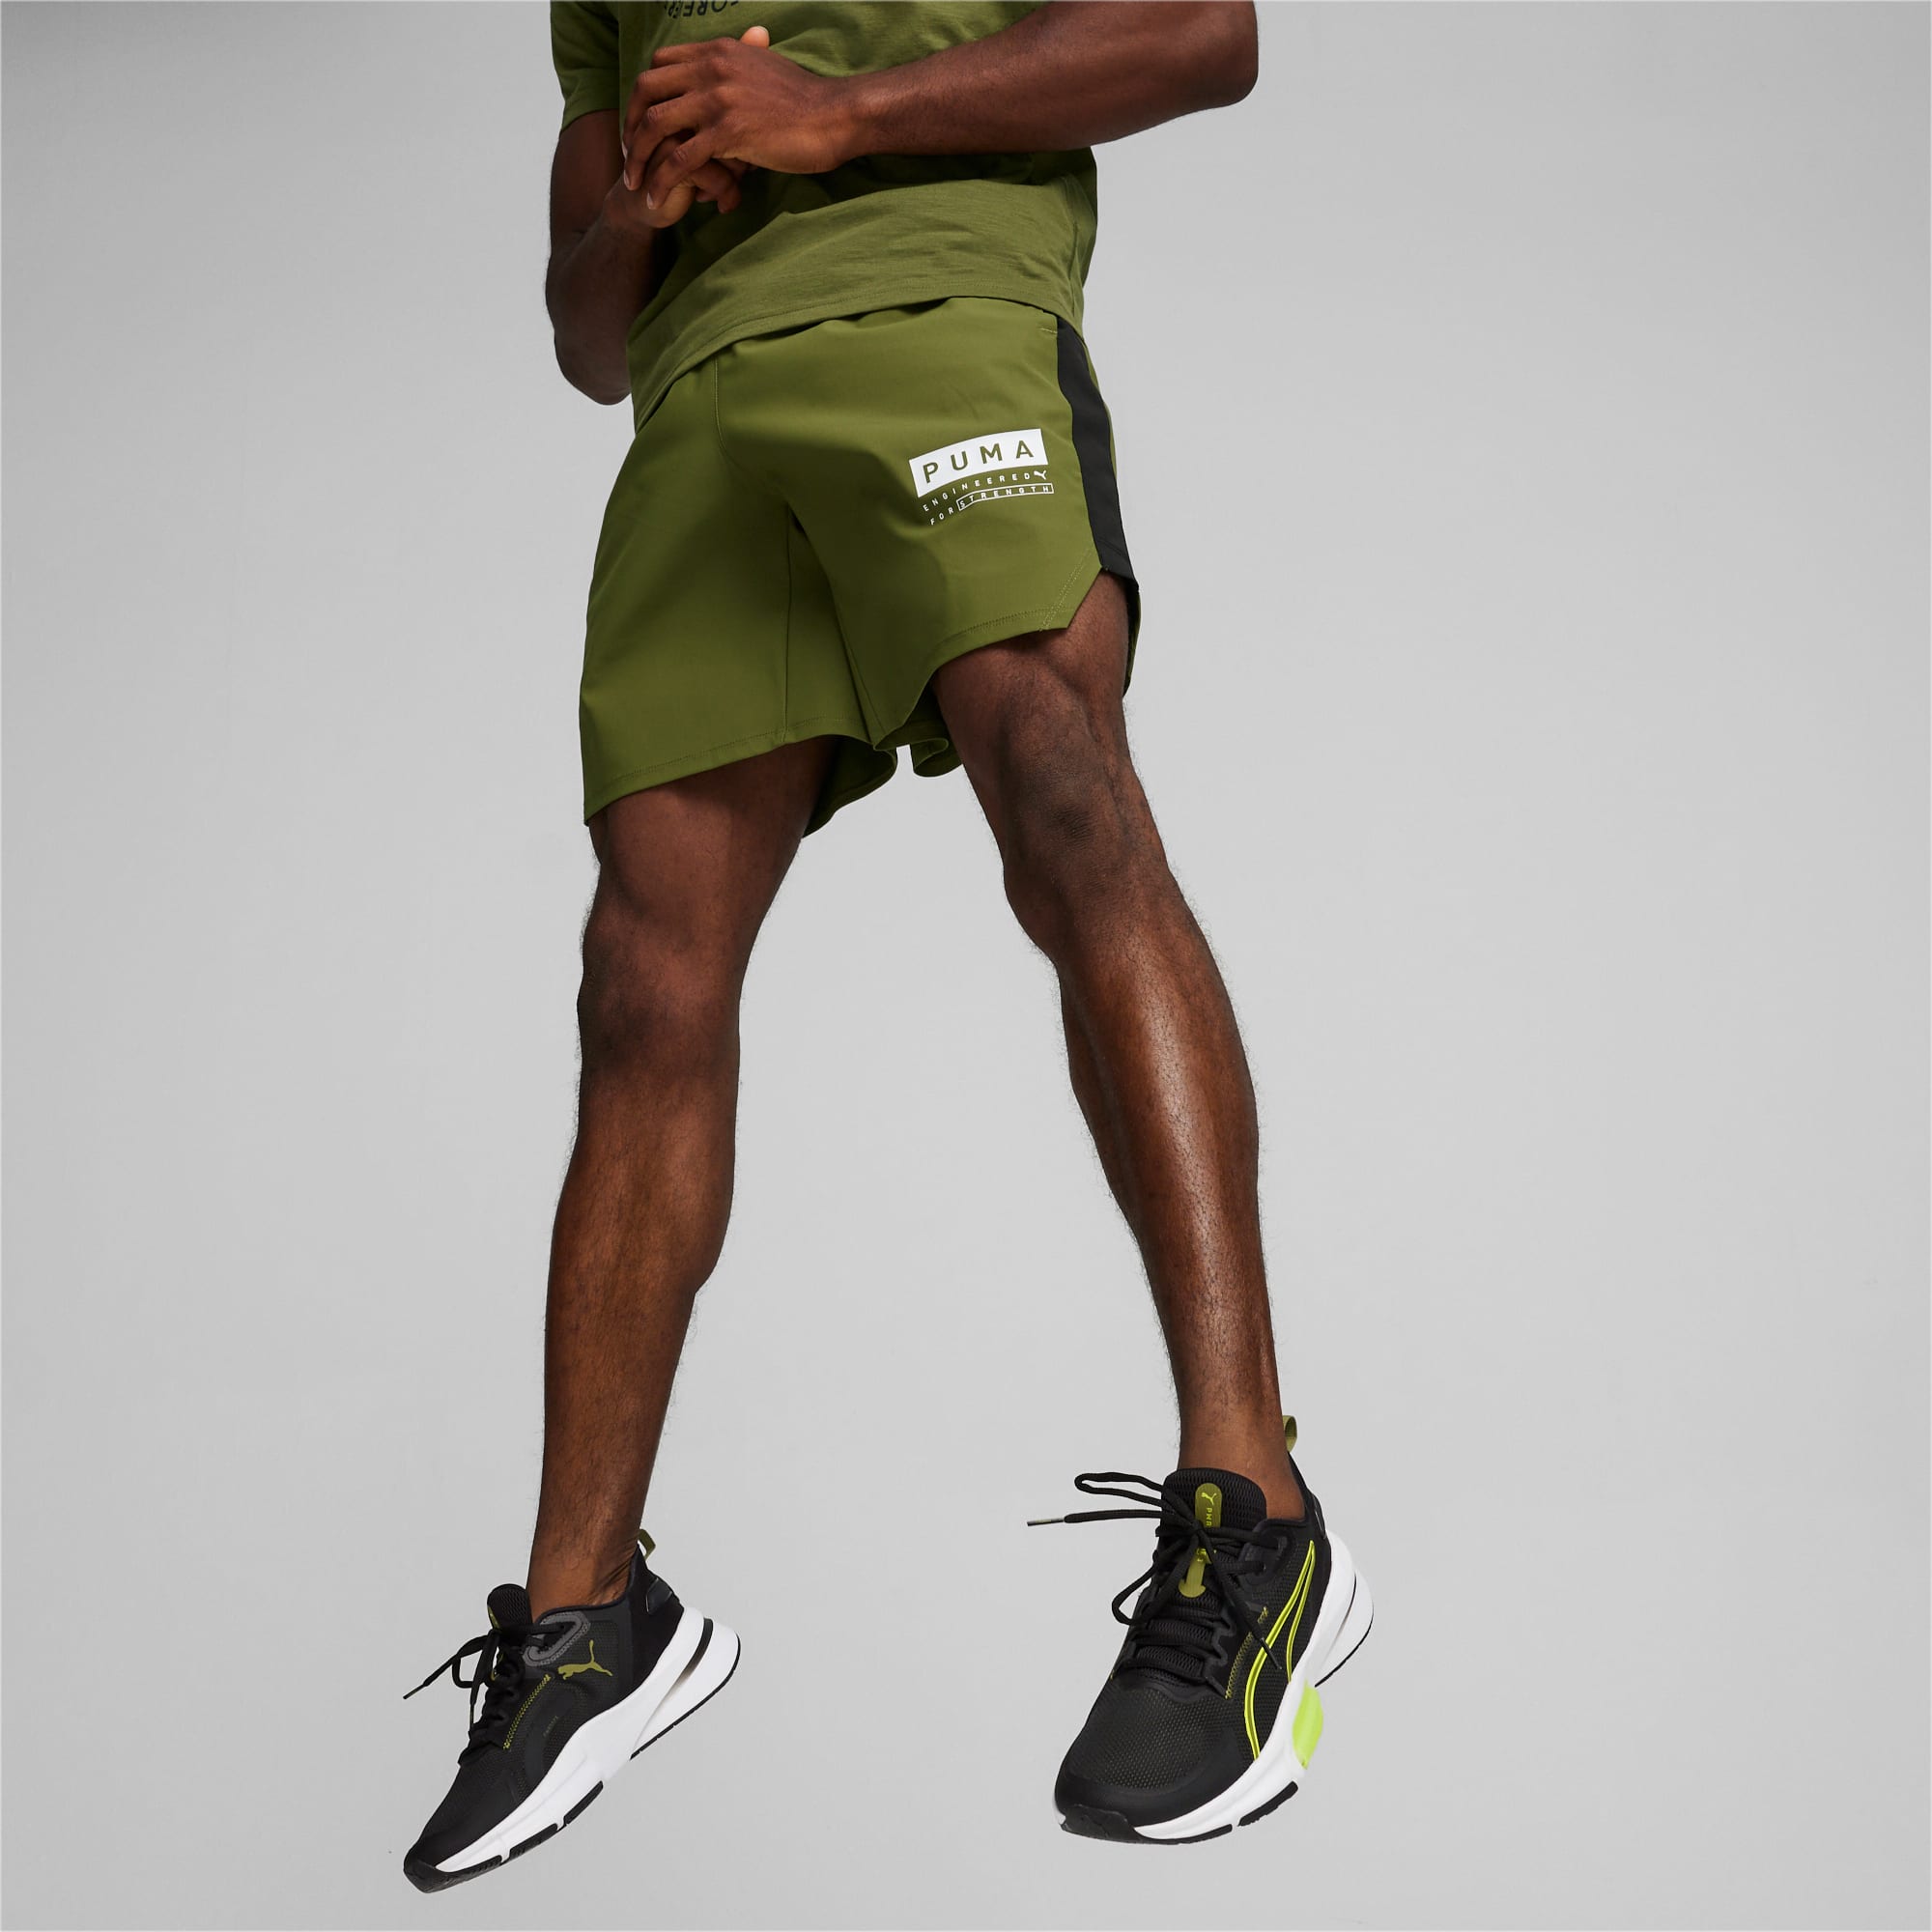 PUMA Shorts de Training Elásticos Fuse 7 4-Way Para Hombre